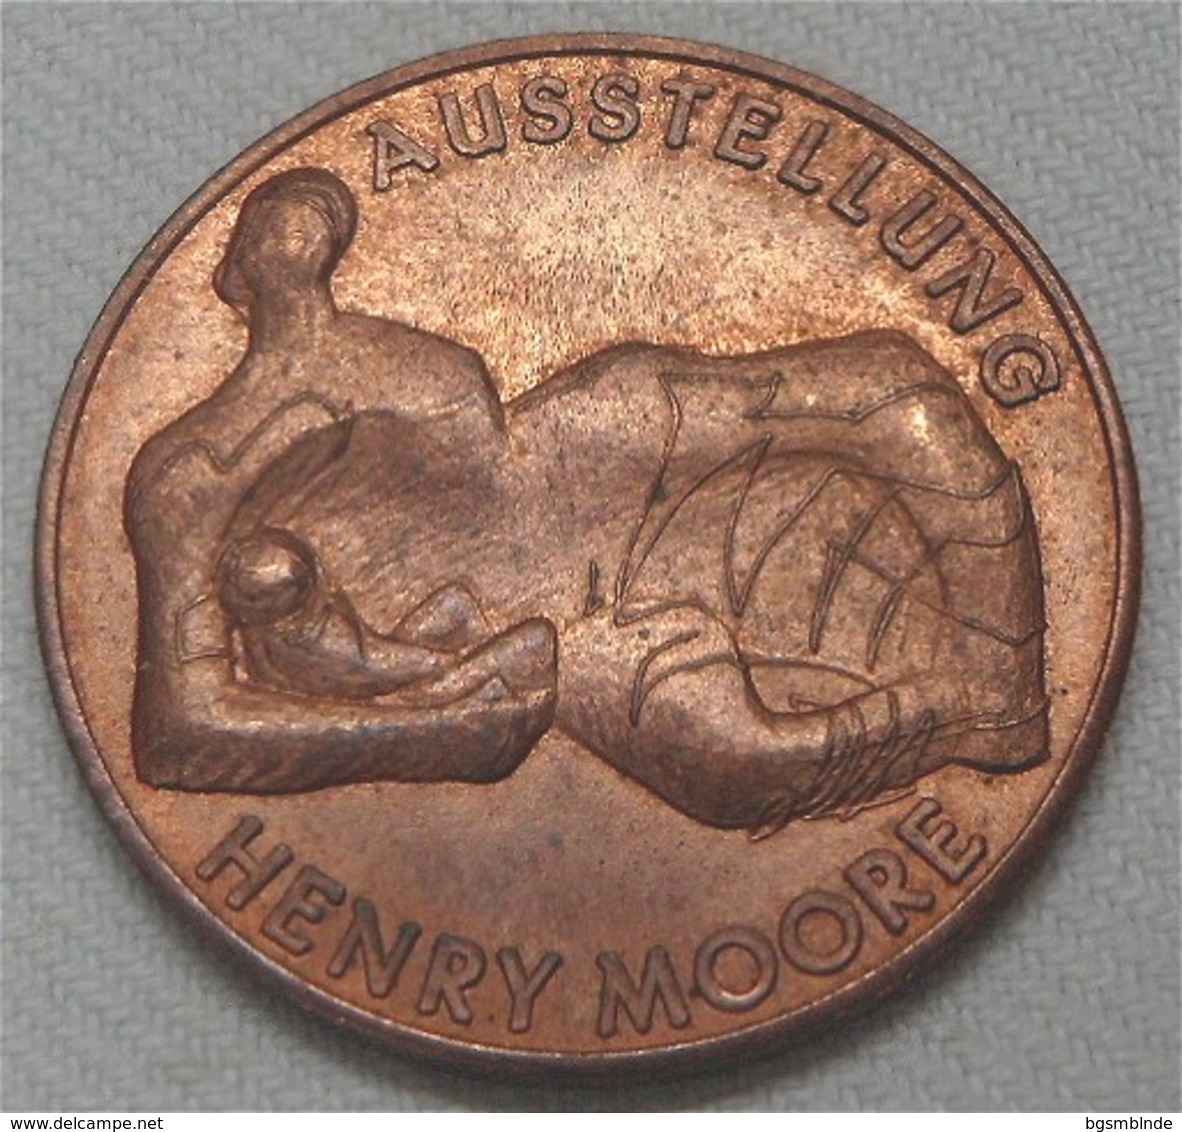 Medaille "Henry Moore" Galerie Ruf München - Pièces écrasées (Elongated Coins)